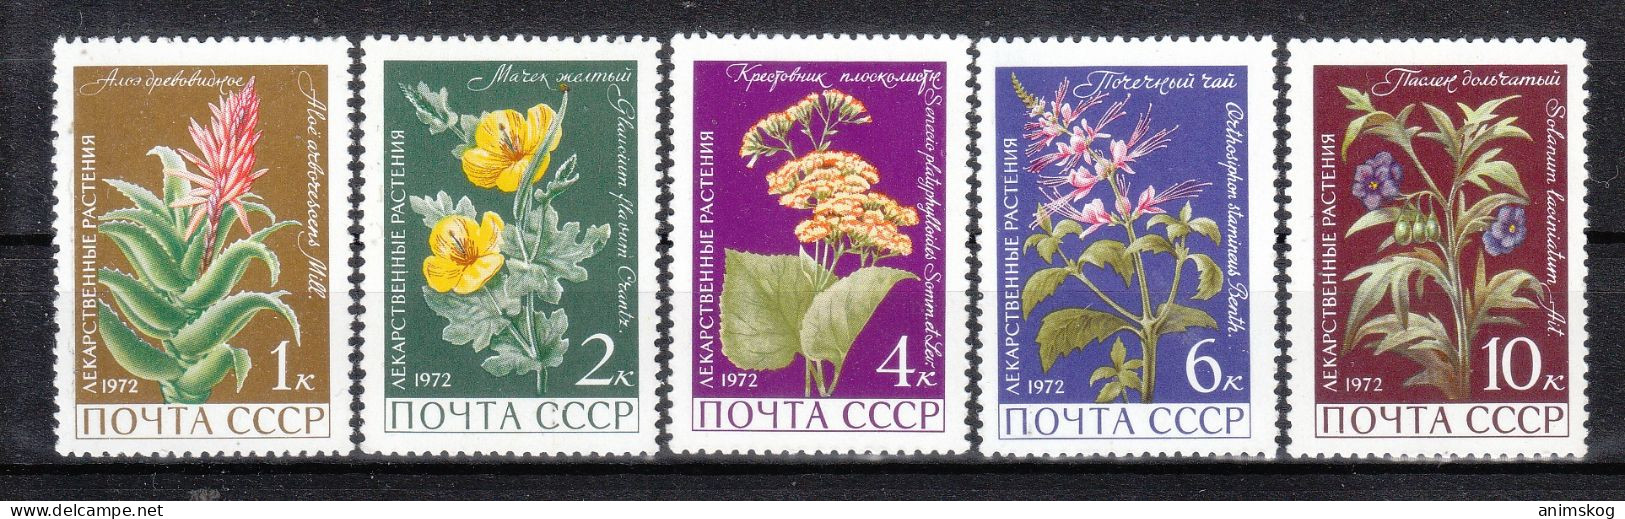 UdSSR 1972**, Arzneipflanzen, Mit Sukkulenten Aloe Und Senecio / USSR 1972, MNH, Medicinal Plants With Aloe And Senecio - Cactussen